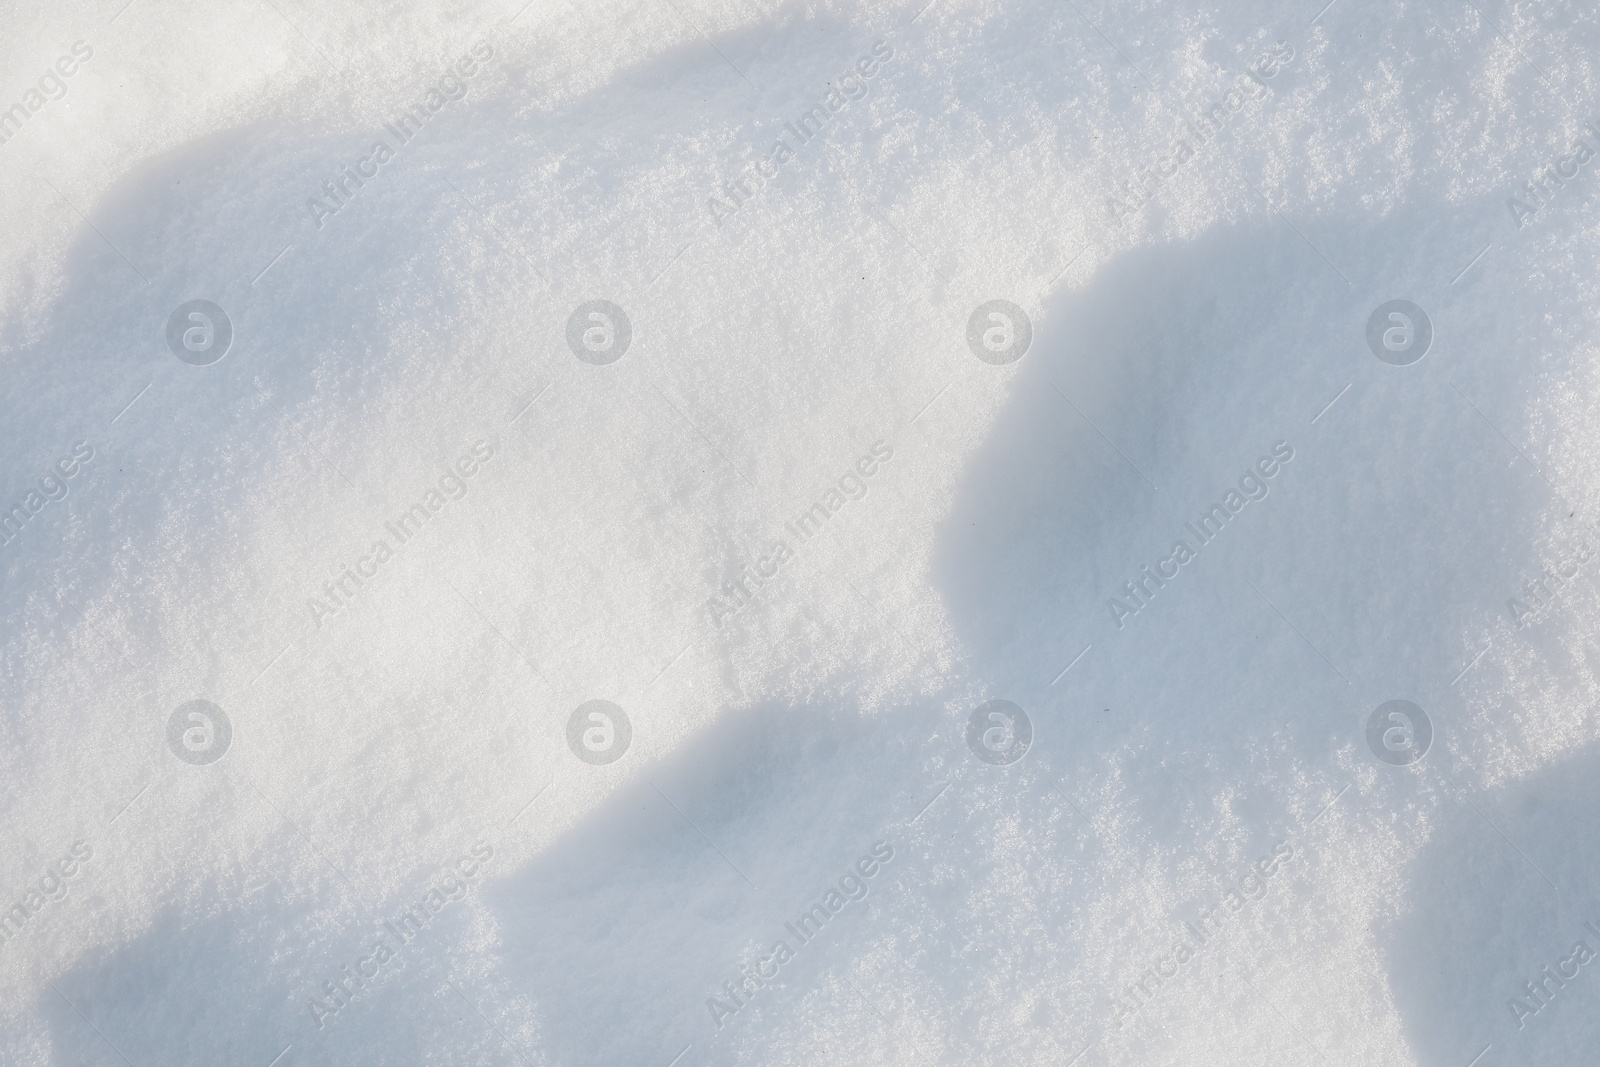 Photo of White snow as background, top view. Winter season